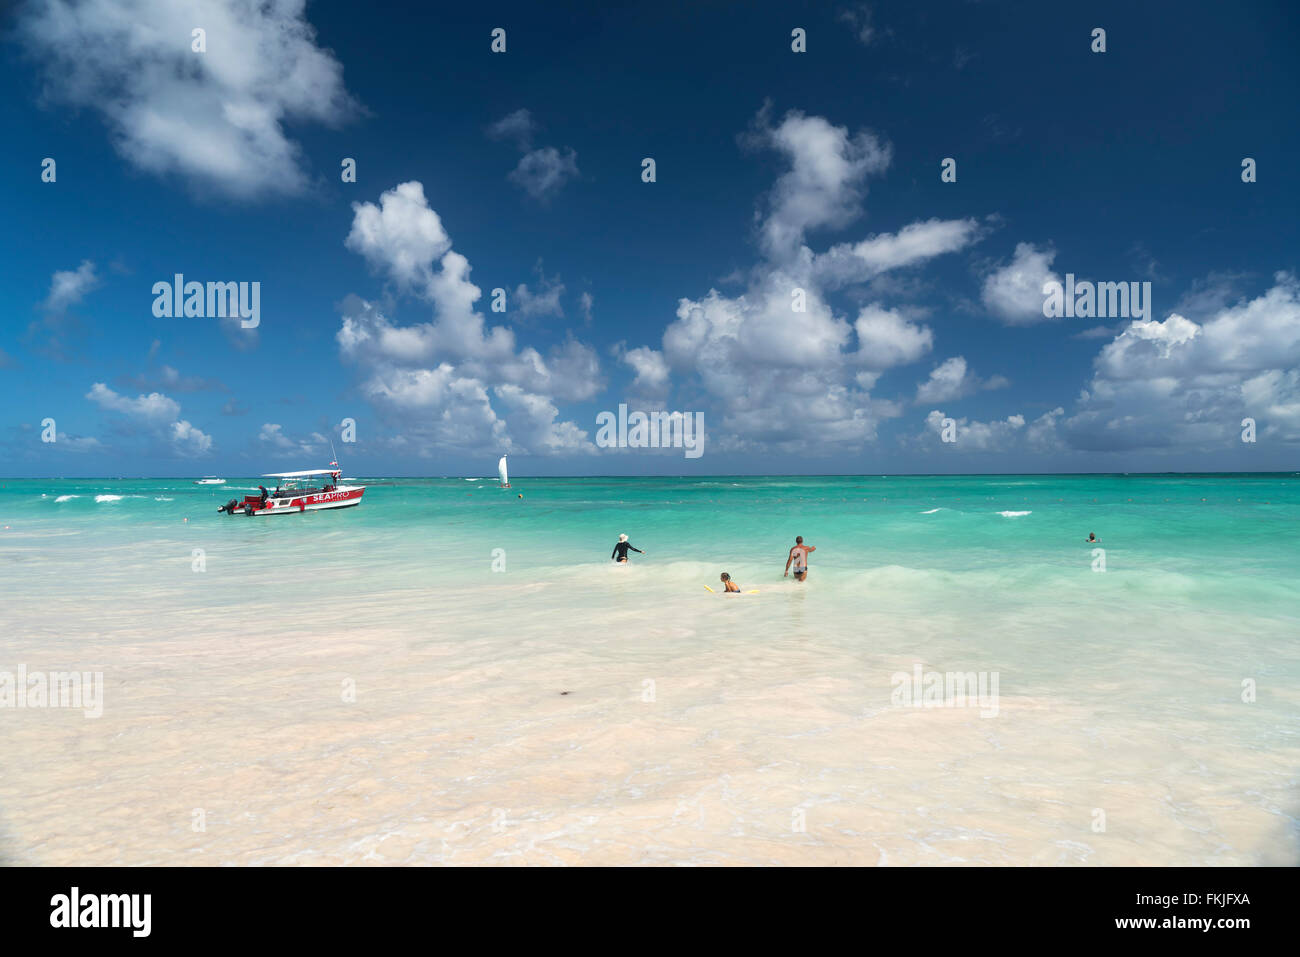 Los turistas bañarse en el océano, Playa Bávaro, Punta Cana, República Dominicana, El Caribe, América, Foto de stock